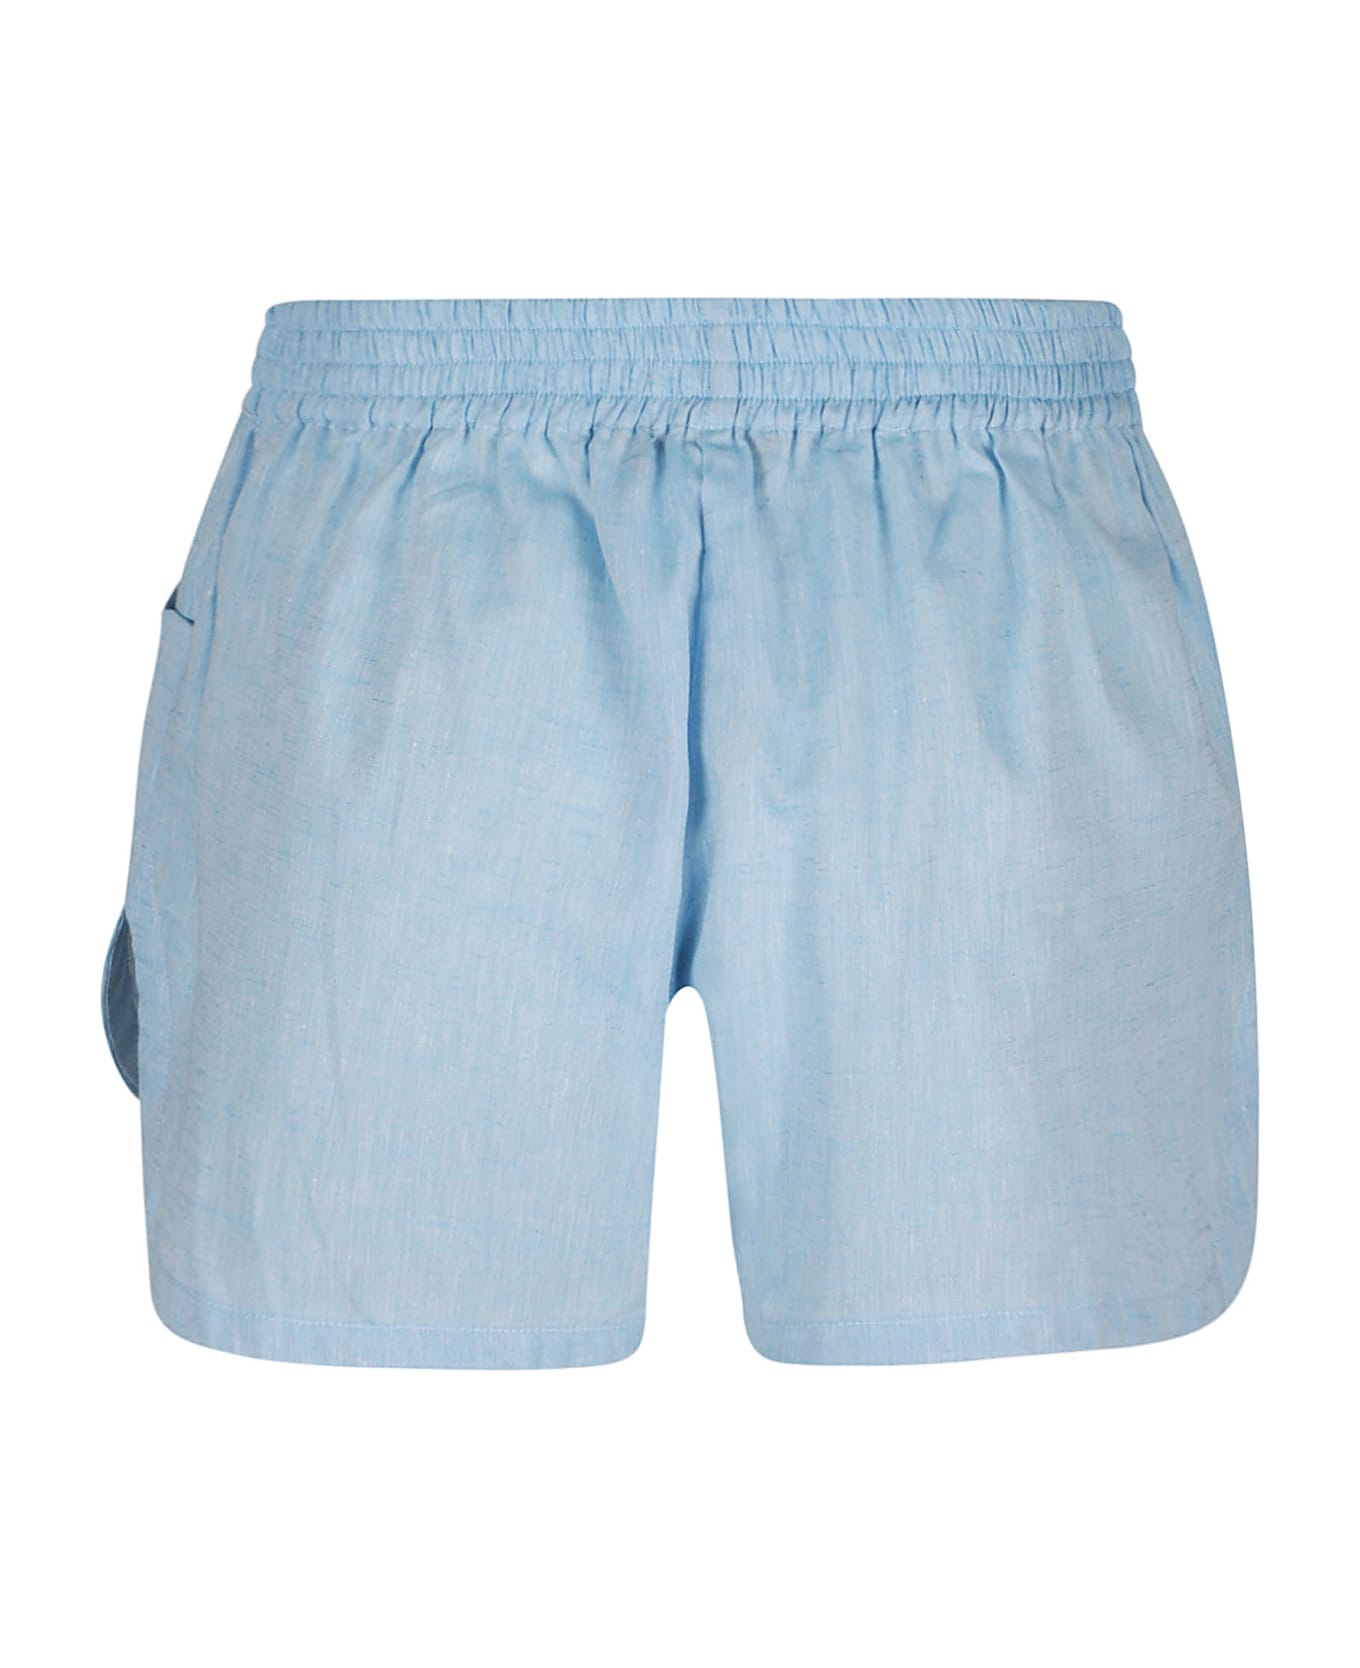 Ermanno Scervino Floral Shorts - Azure ショートパンツ